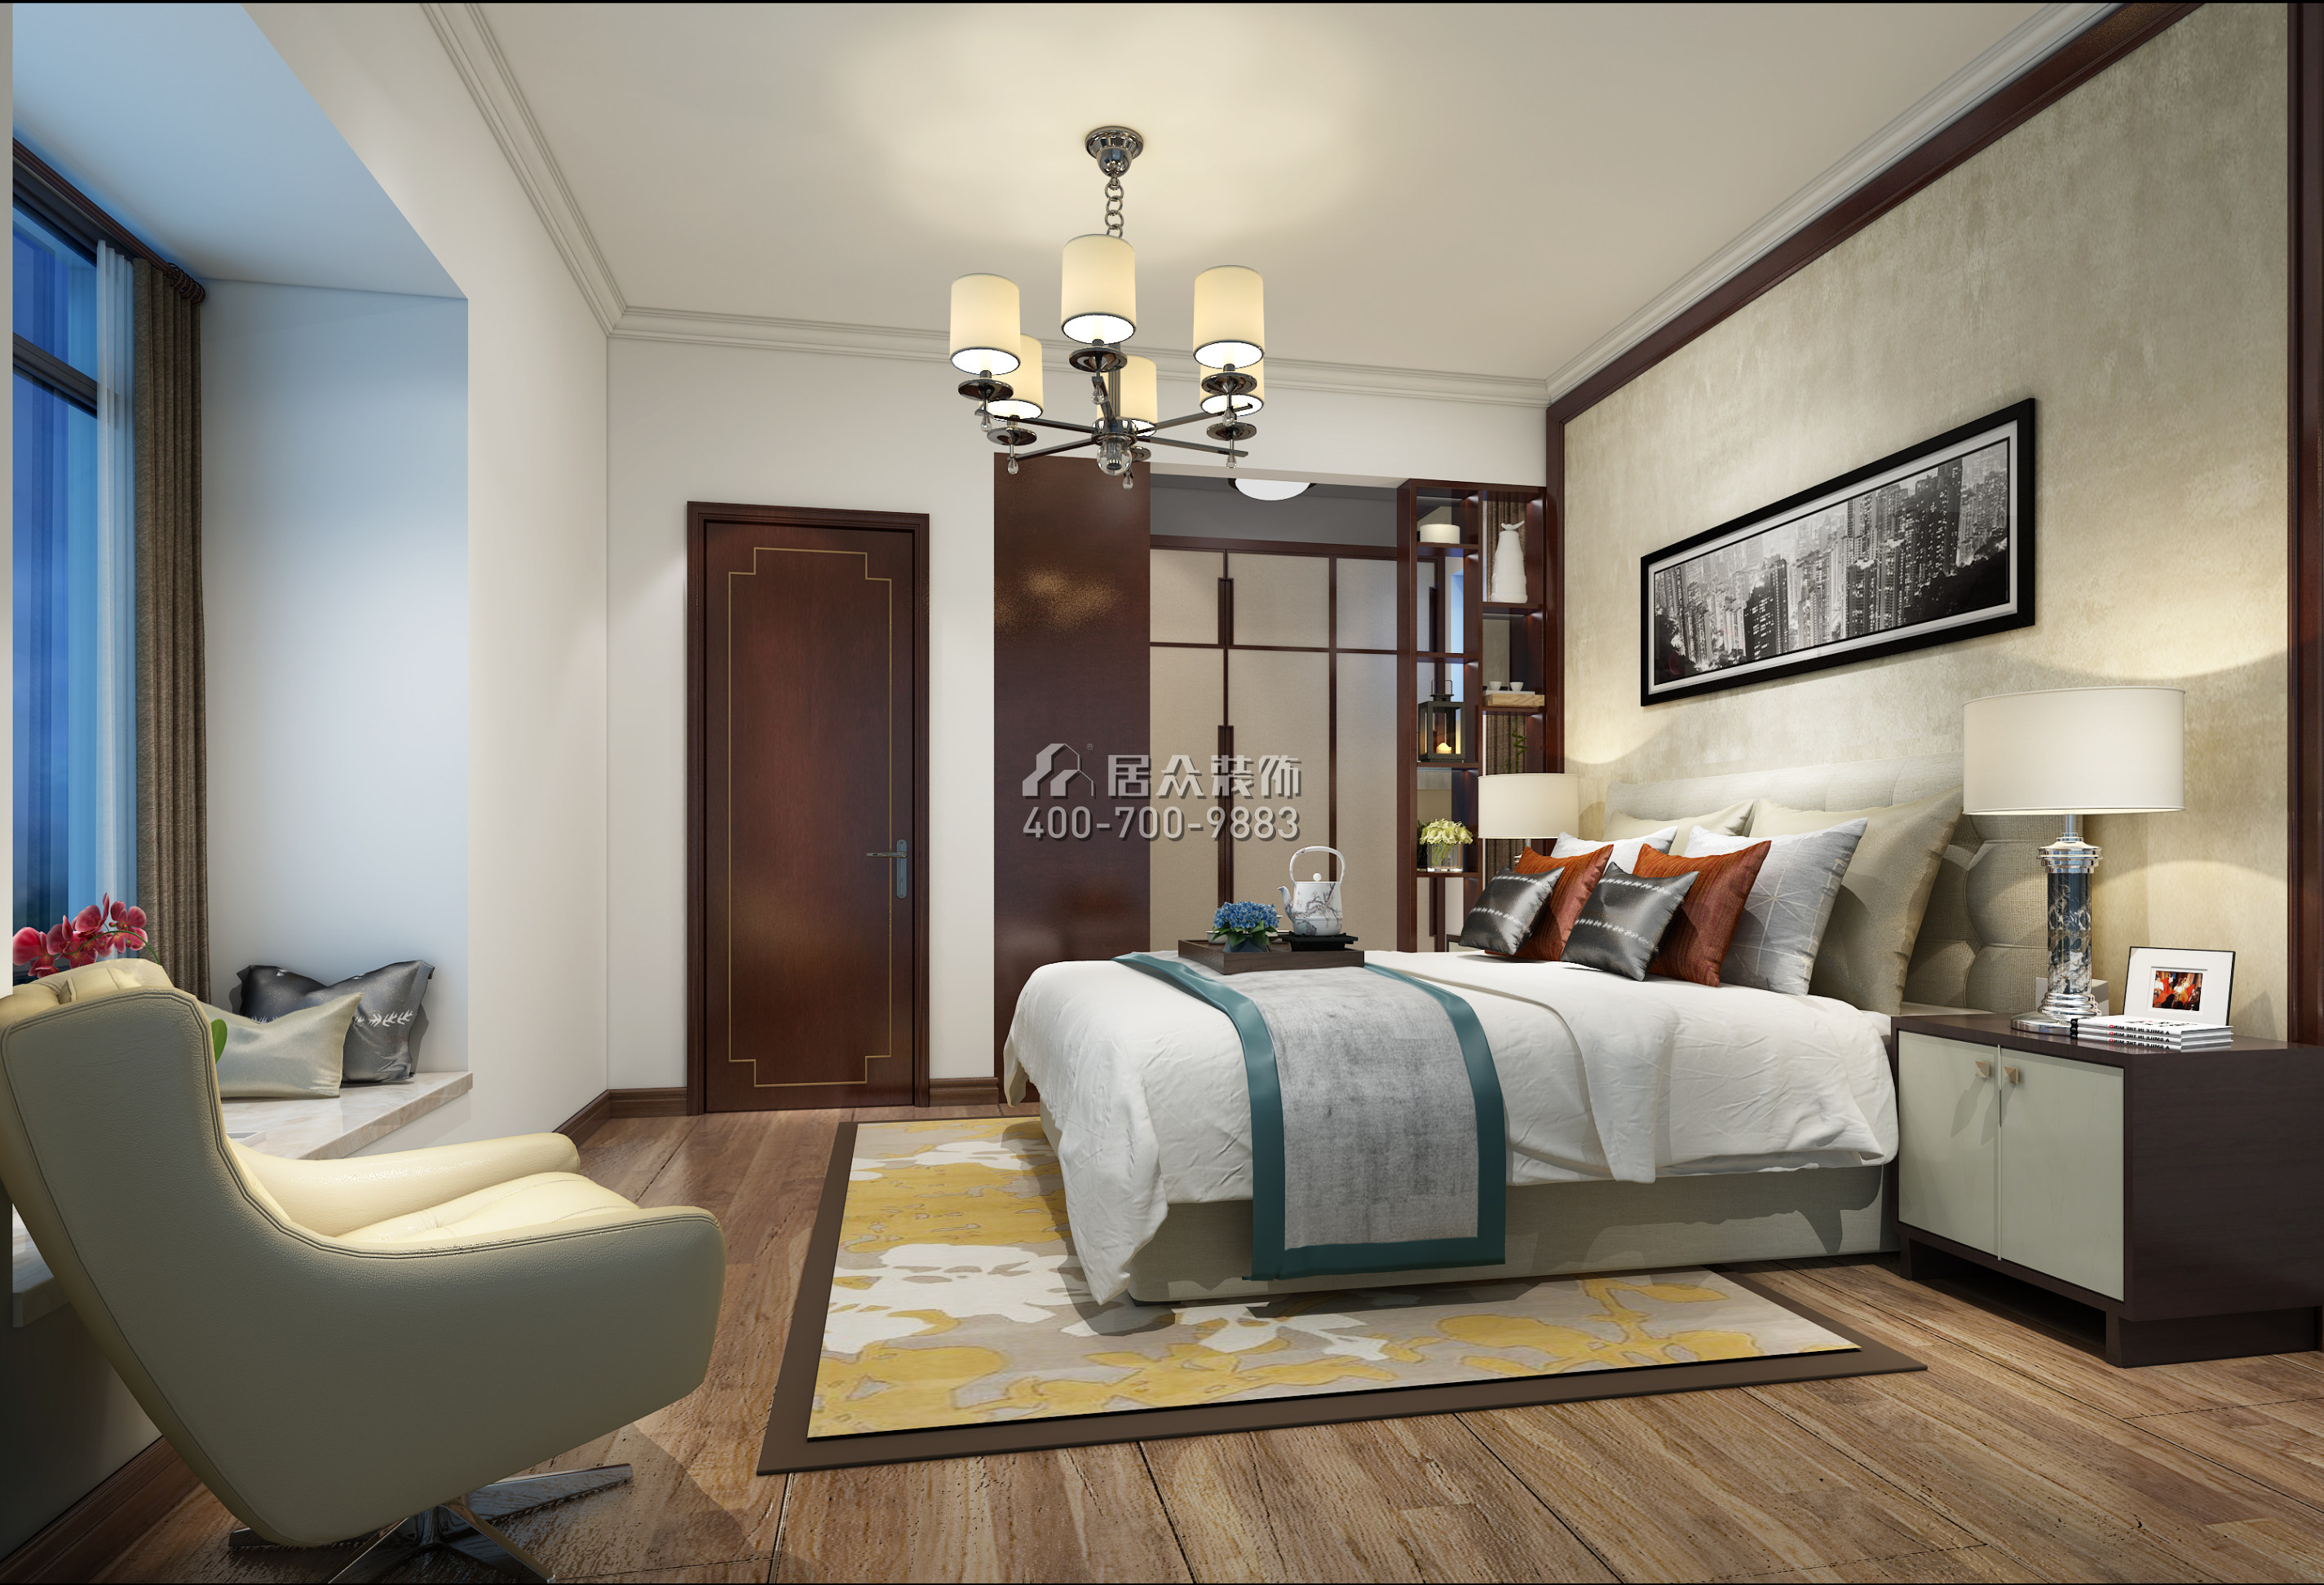 海印长城二期120平方米中式风格平层户型卧室装修效果图